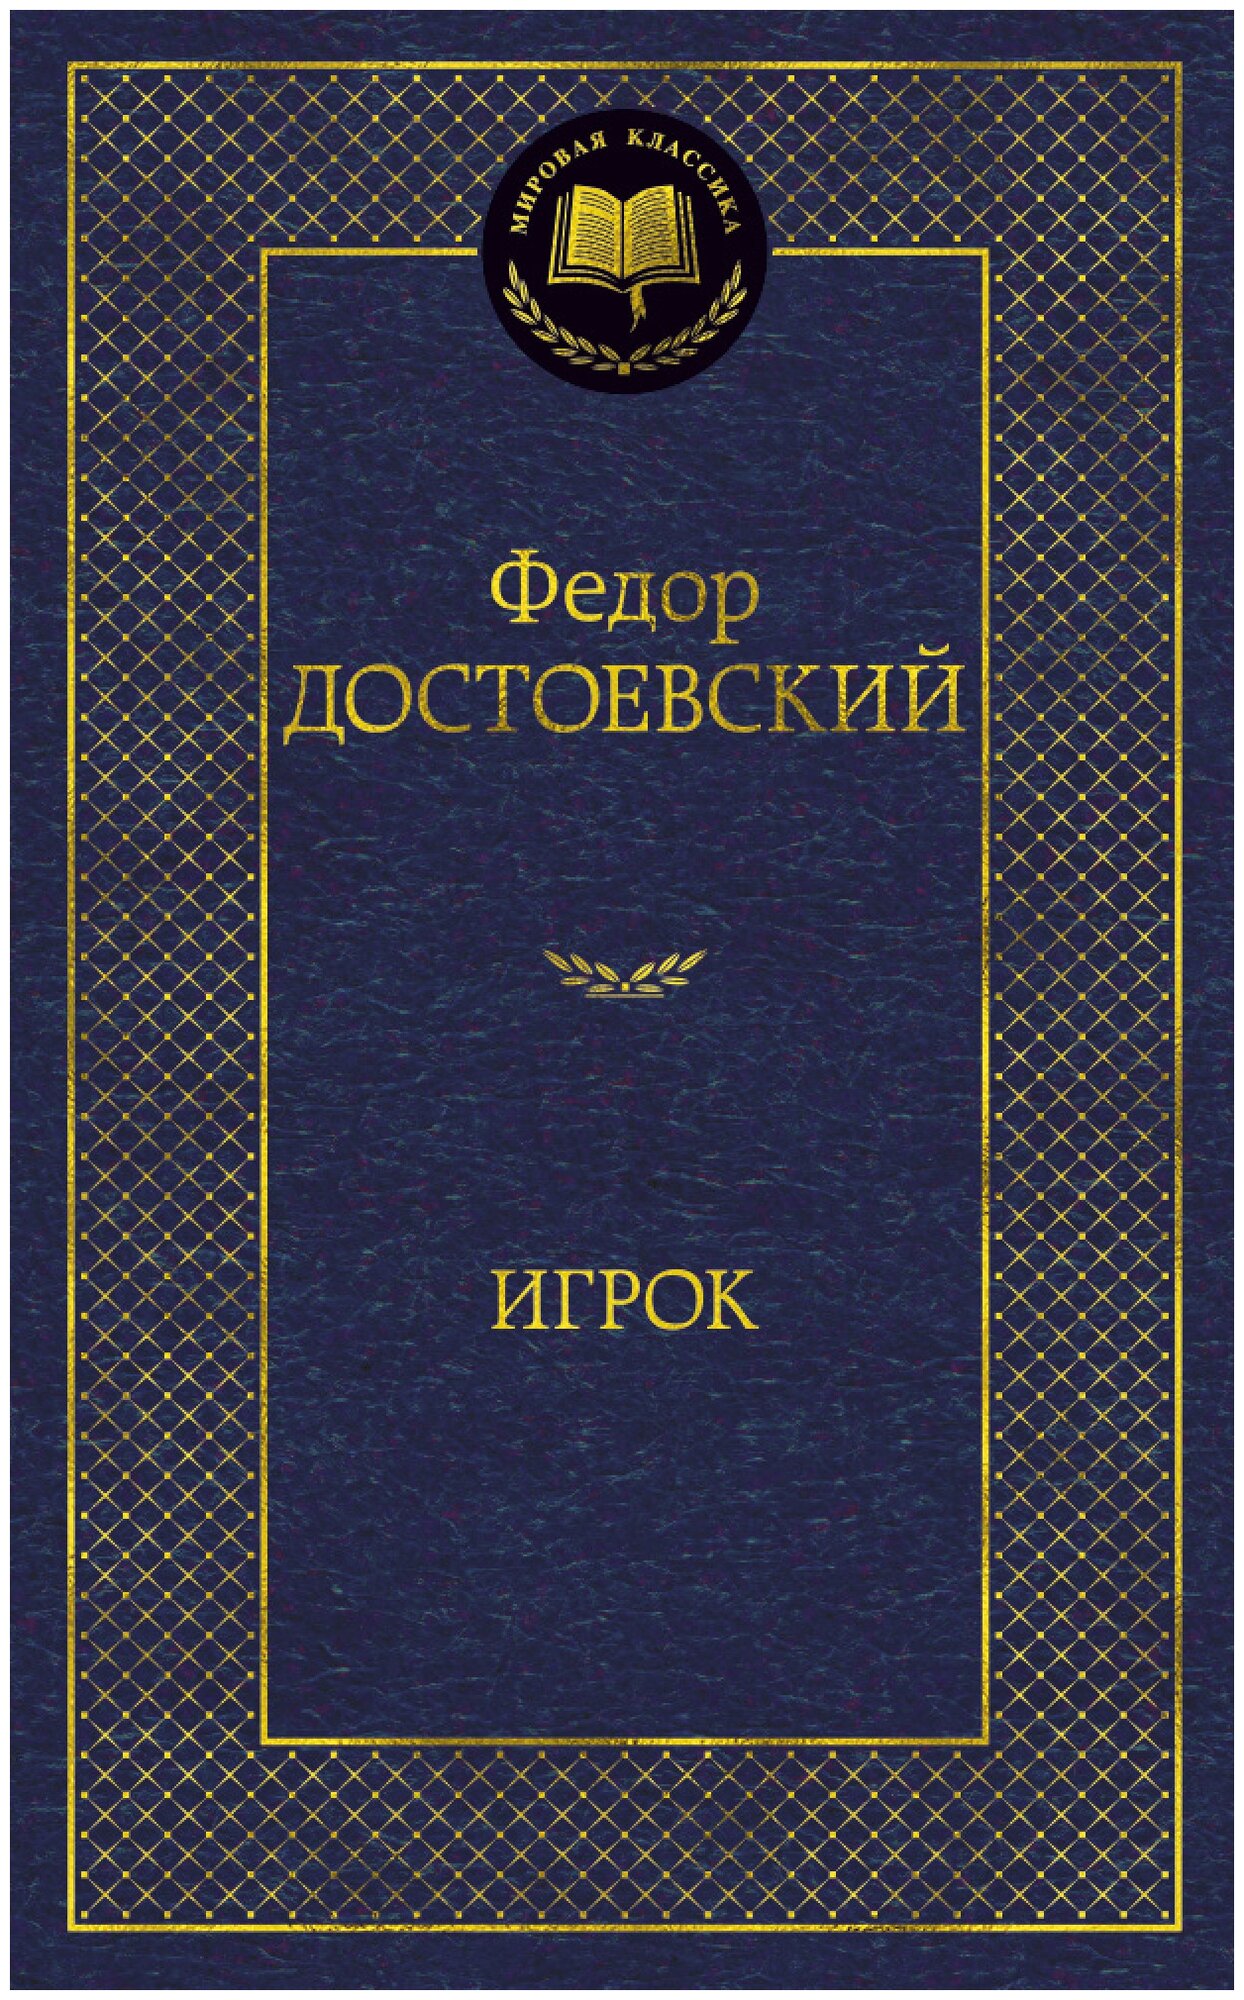 Книга Игрок. Достоевский Ф.